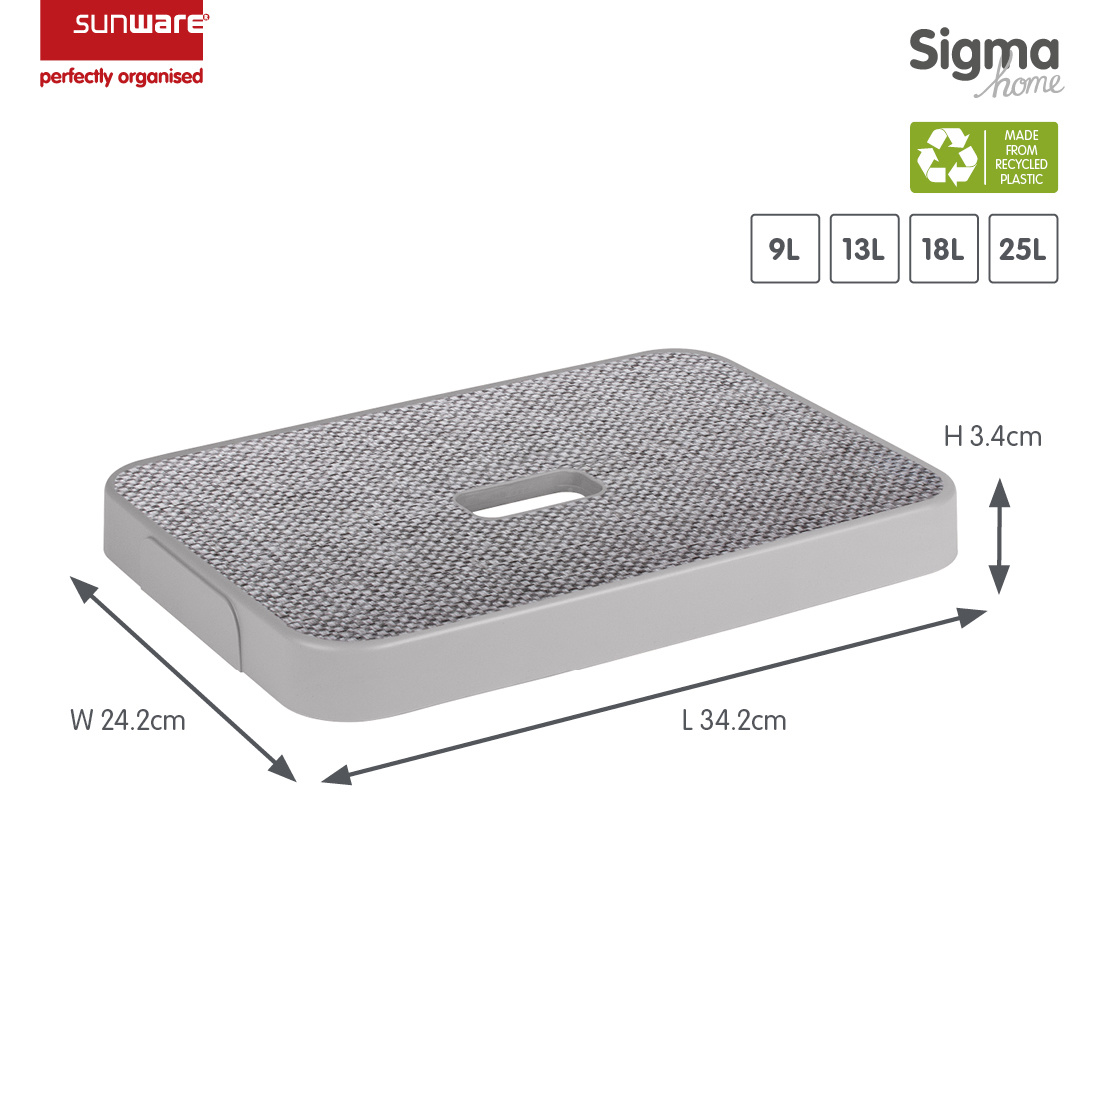 Sigma home Deckel Stoff grau für Aufbewahrungsbox 9L, 13L, 18L und 25L